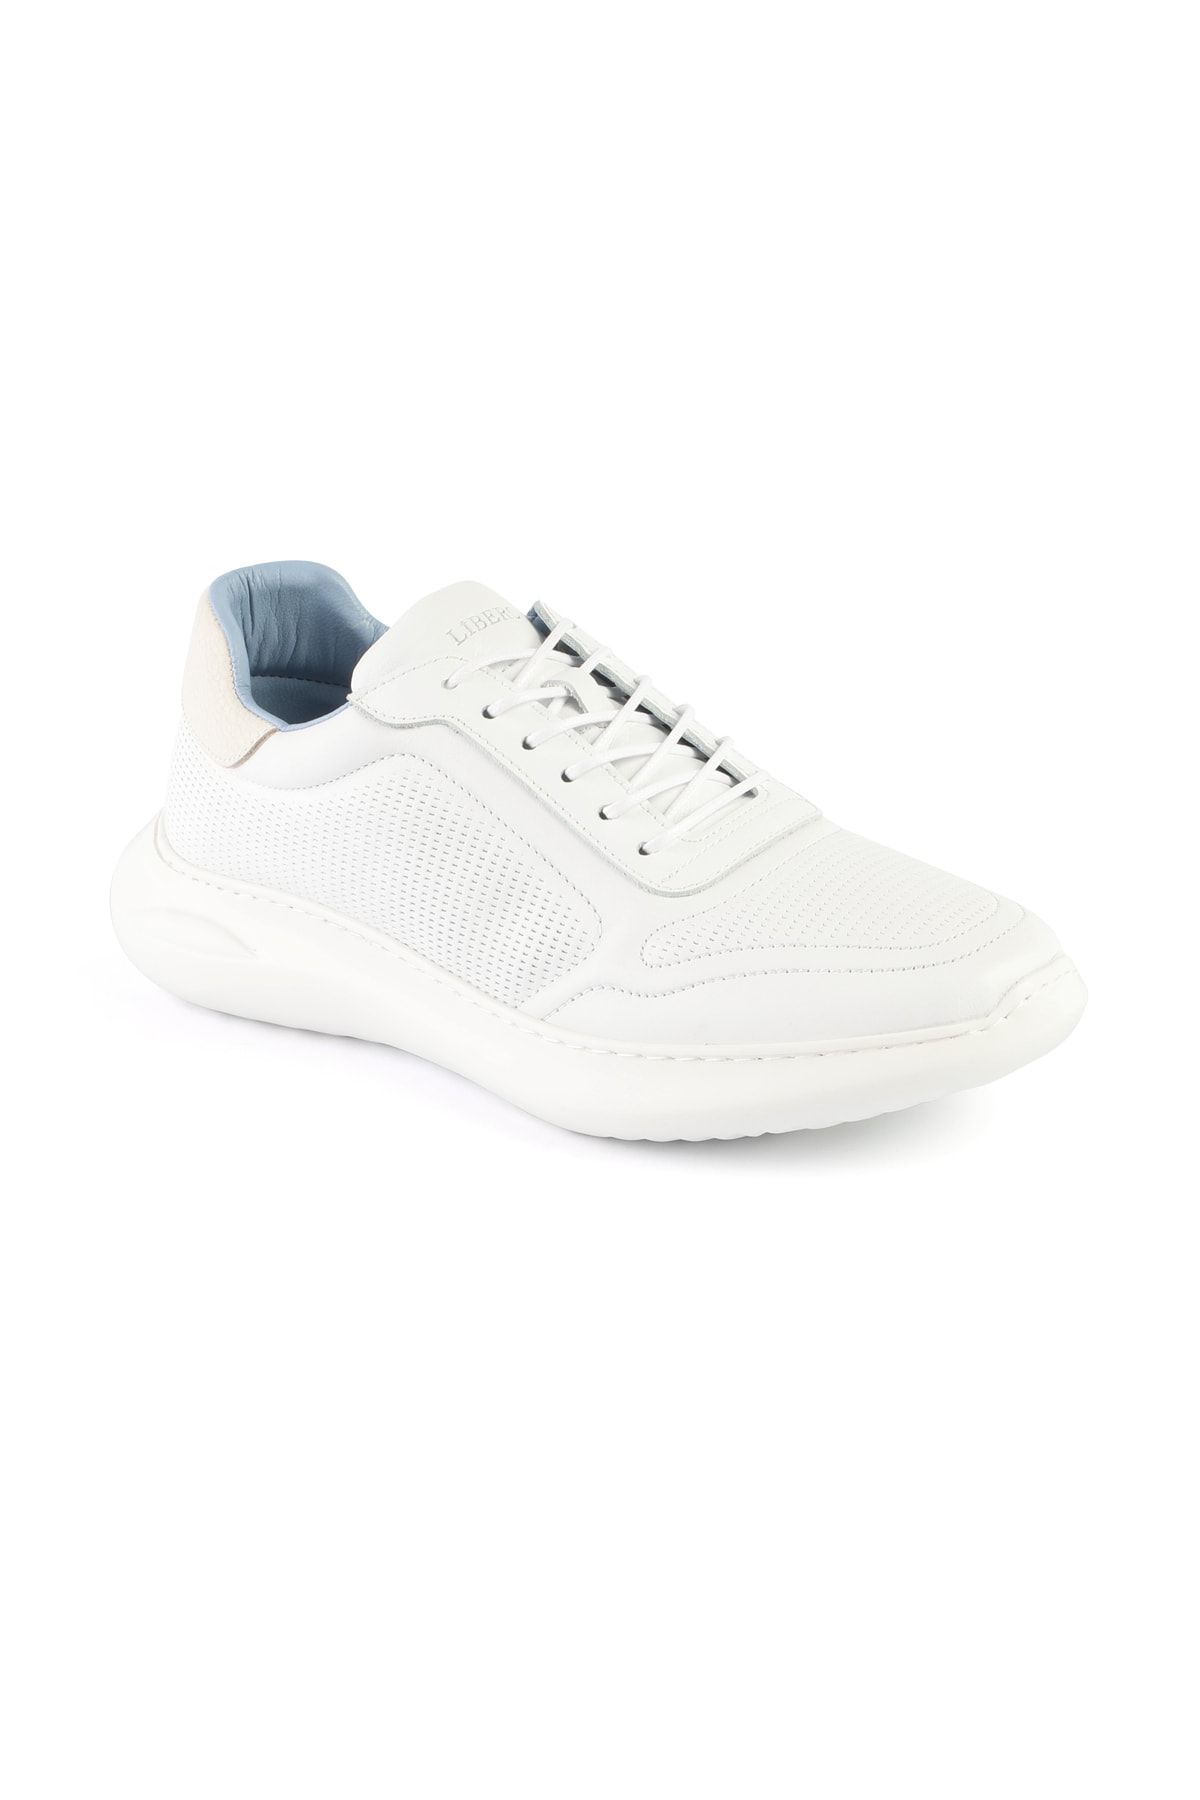 Libero 3401 Erkek Spor Ayakkabı Beyaz